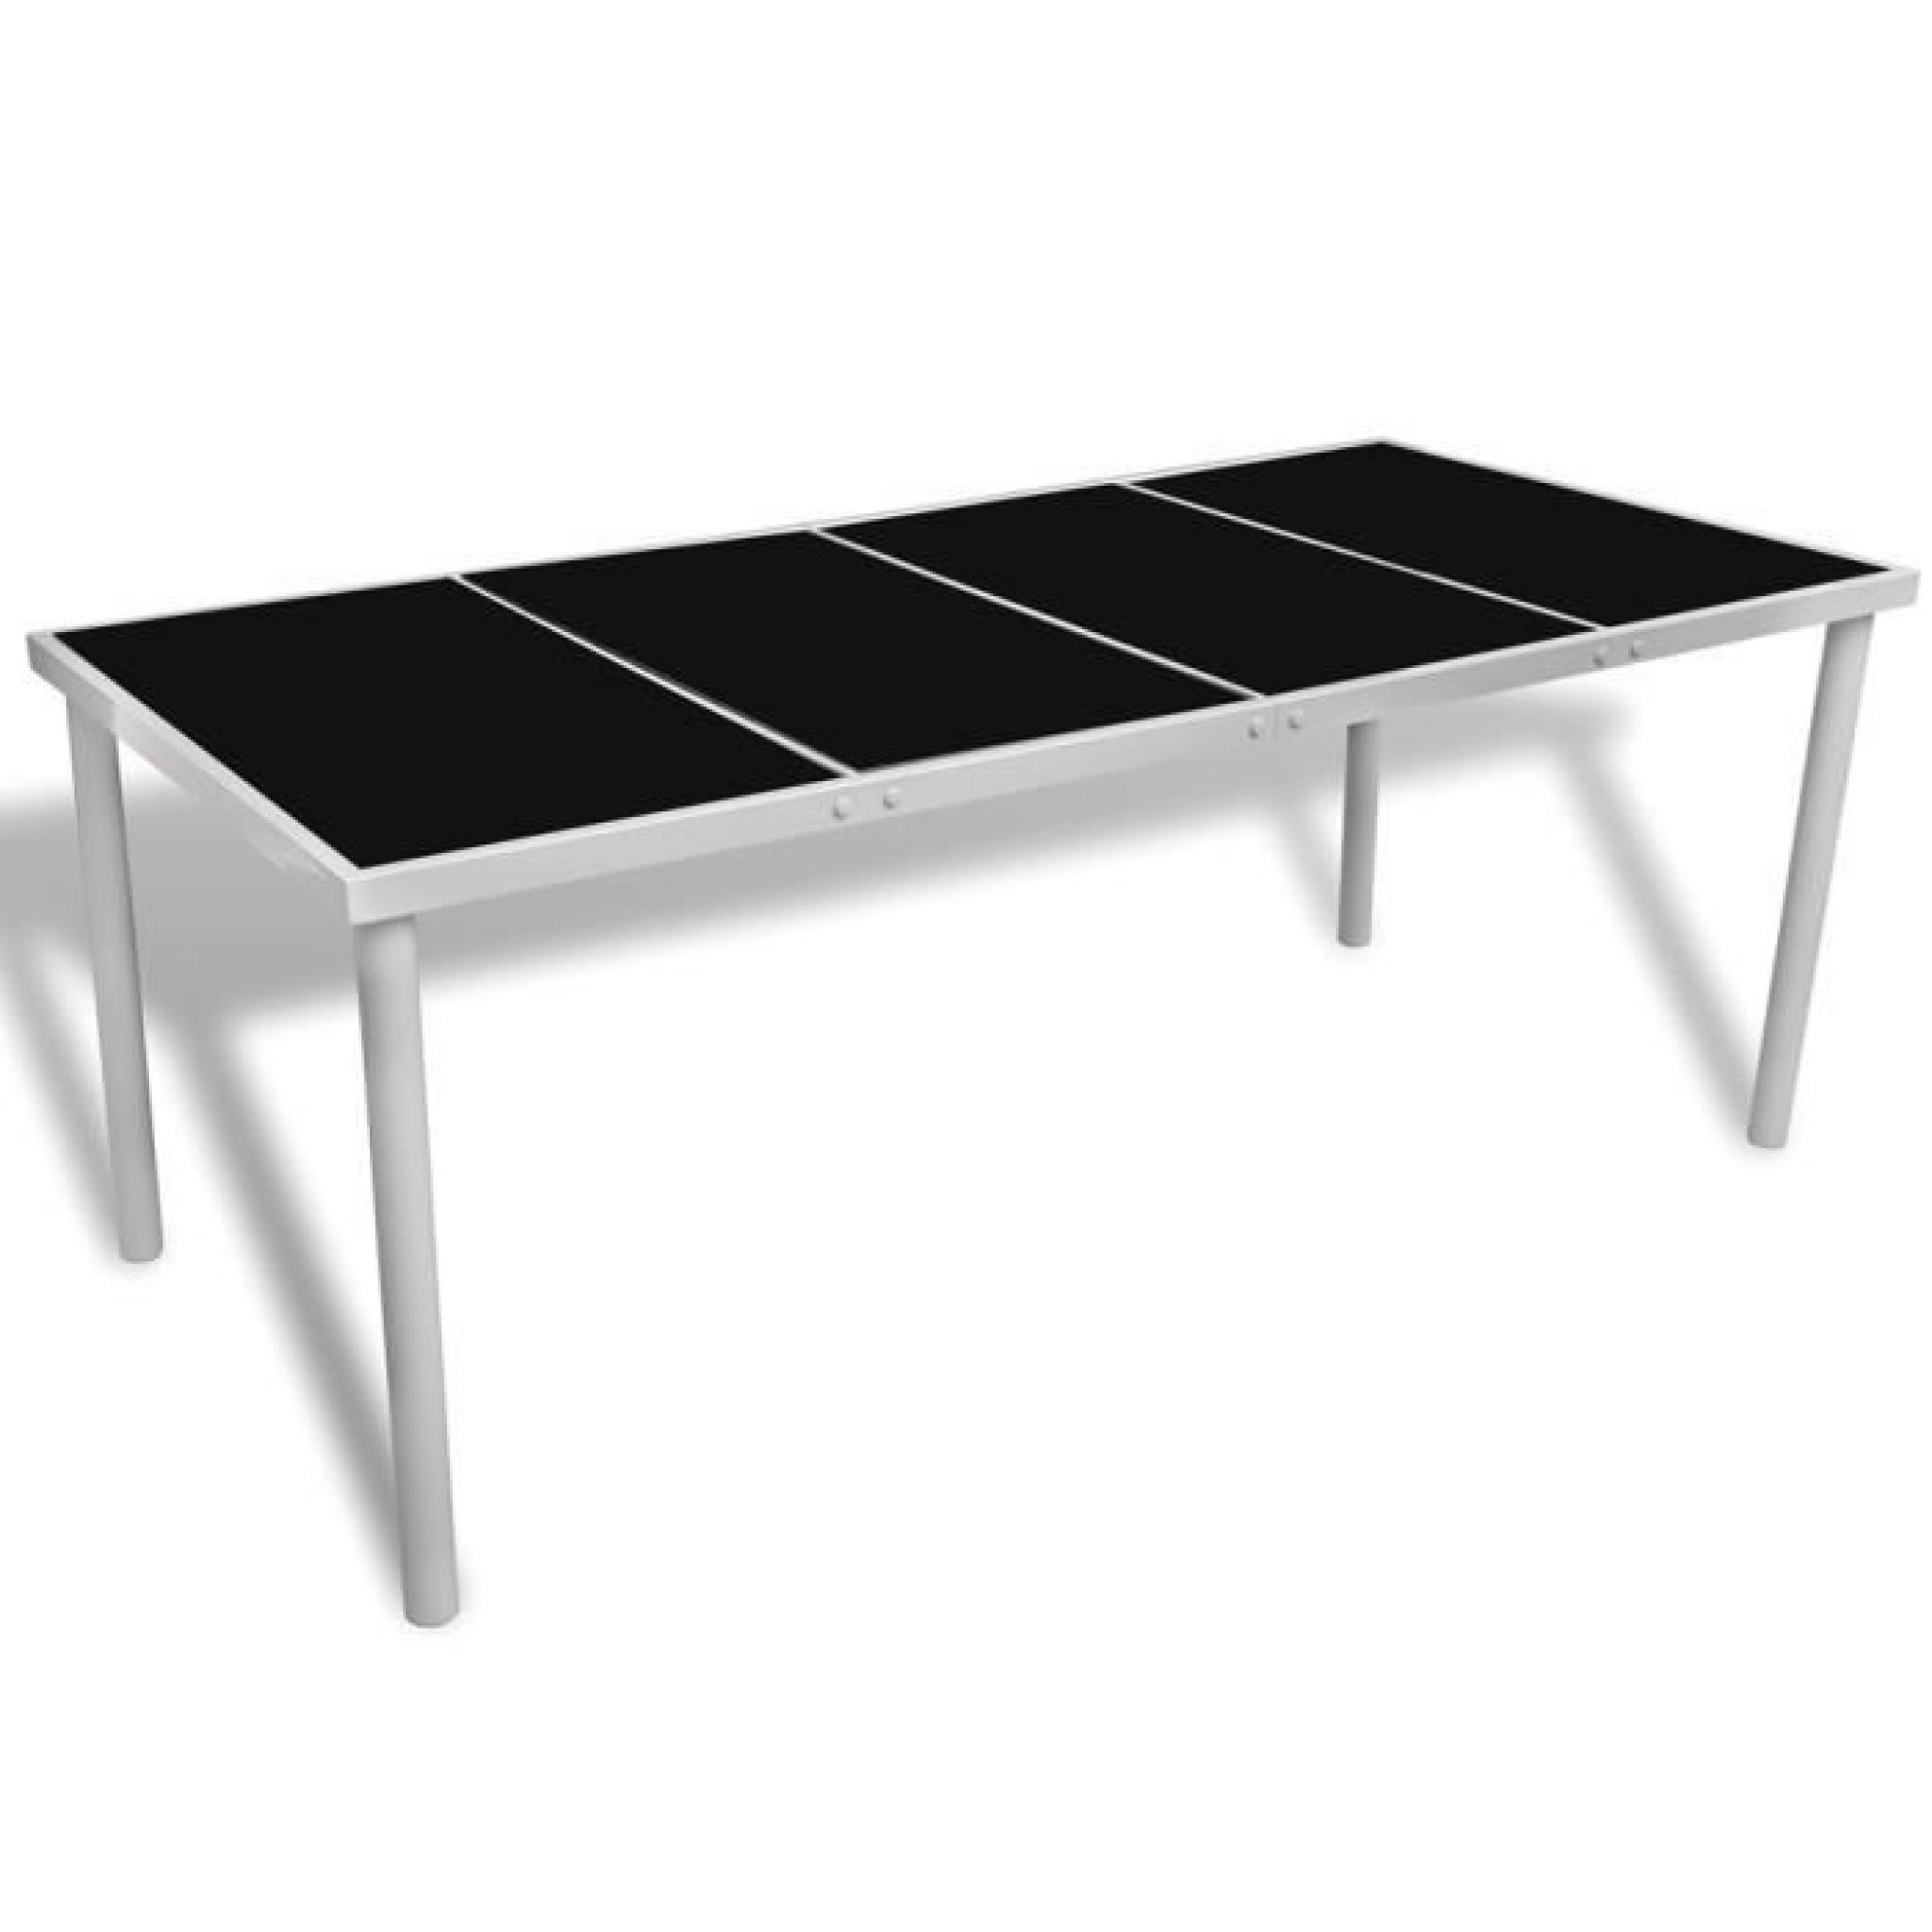 Table avec plateau en verre 190 x 90 x 74 cm